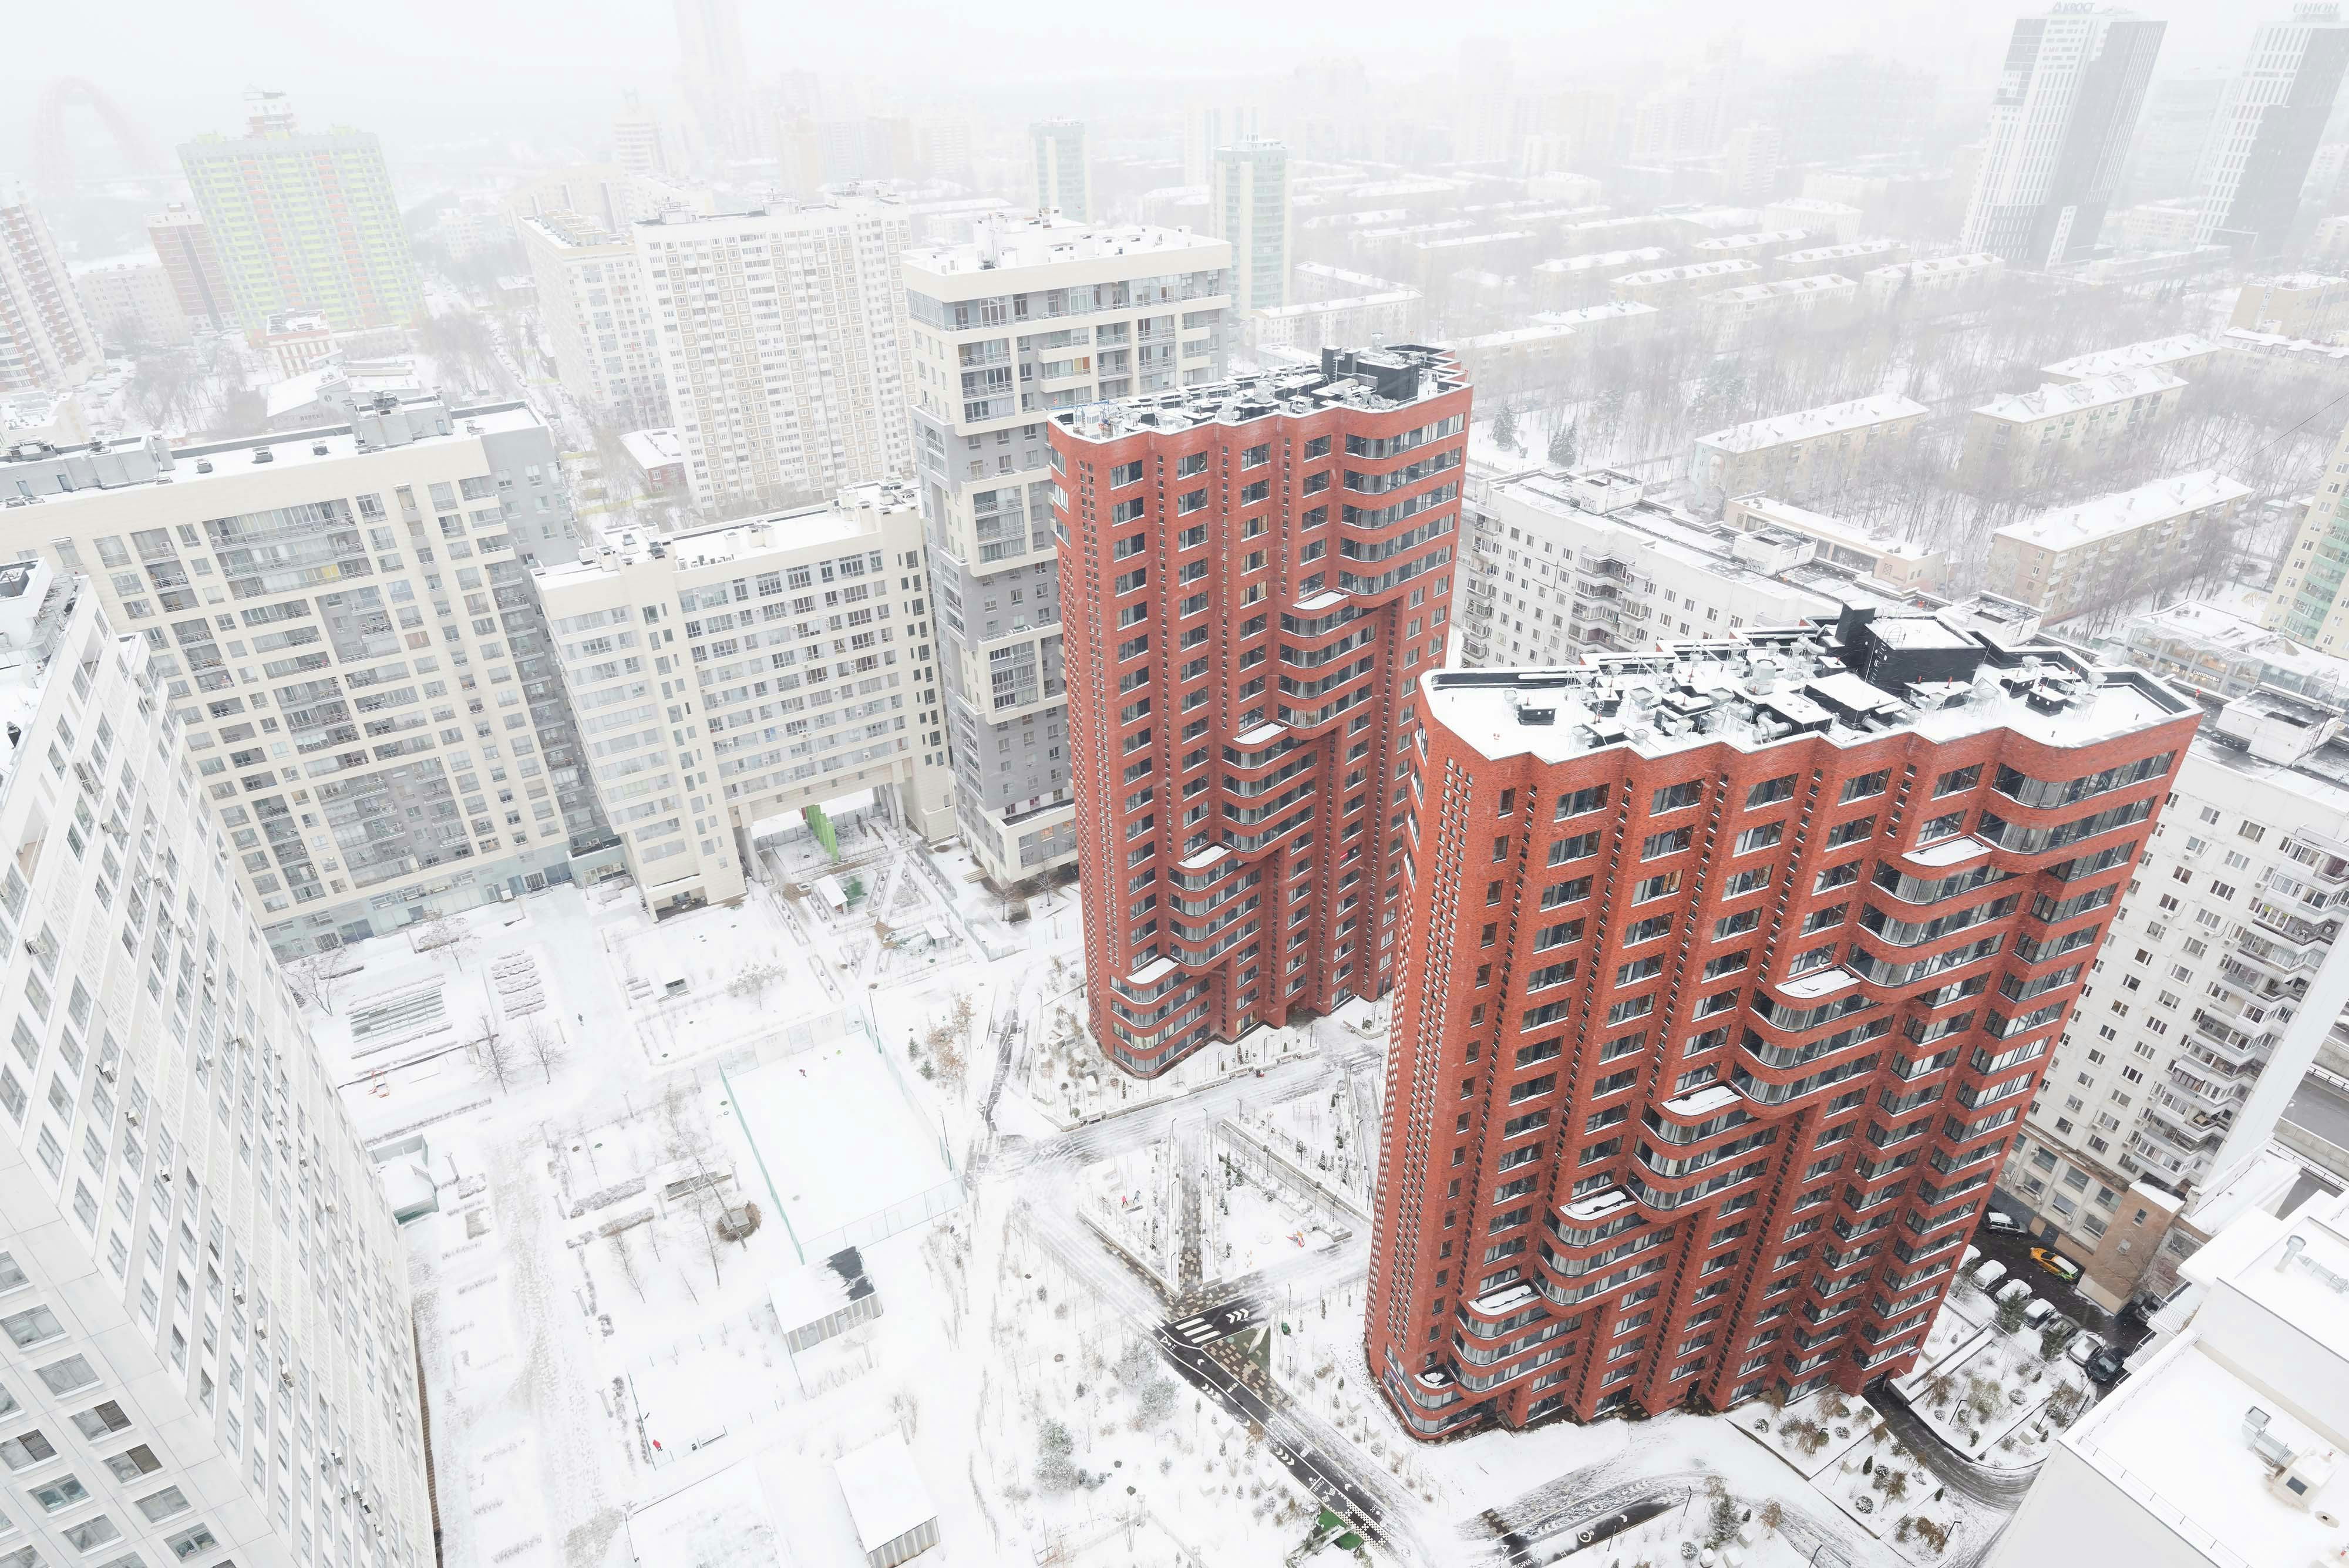 Appartementencomplex in Moskou - Team Paul de Vroom + Sputnik, beeld Ilya Ivanov